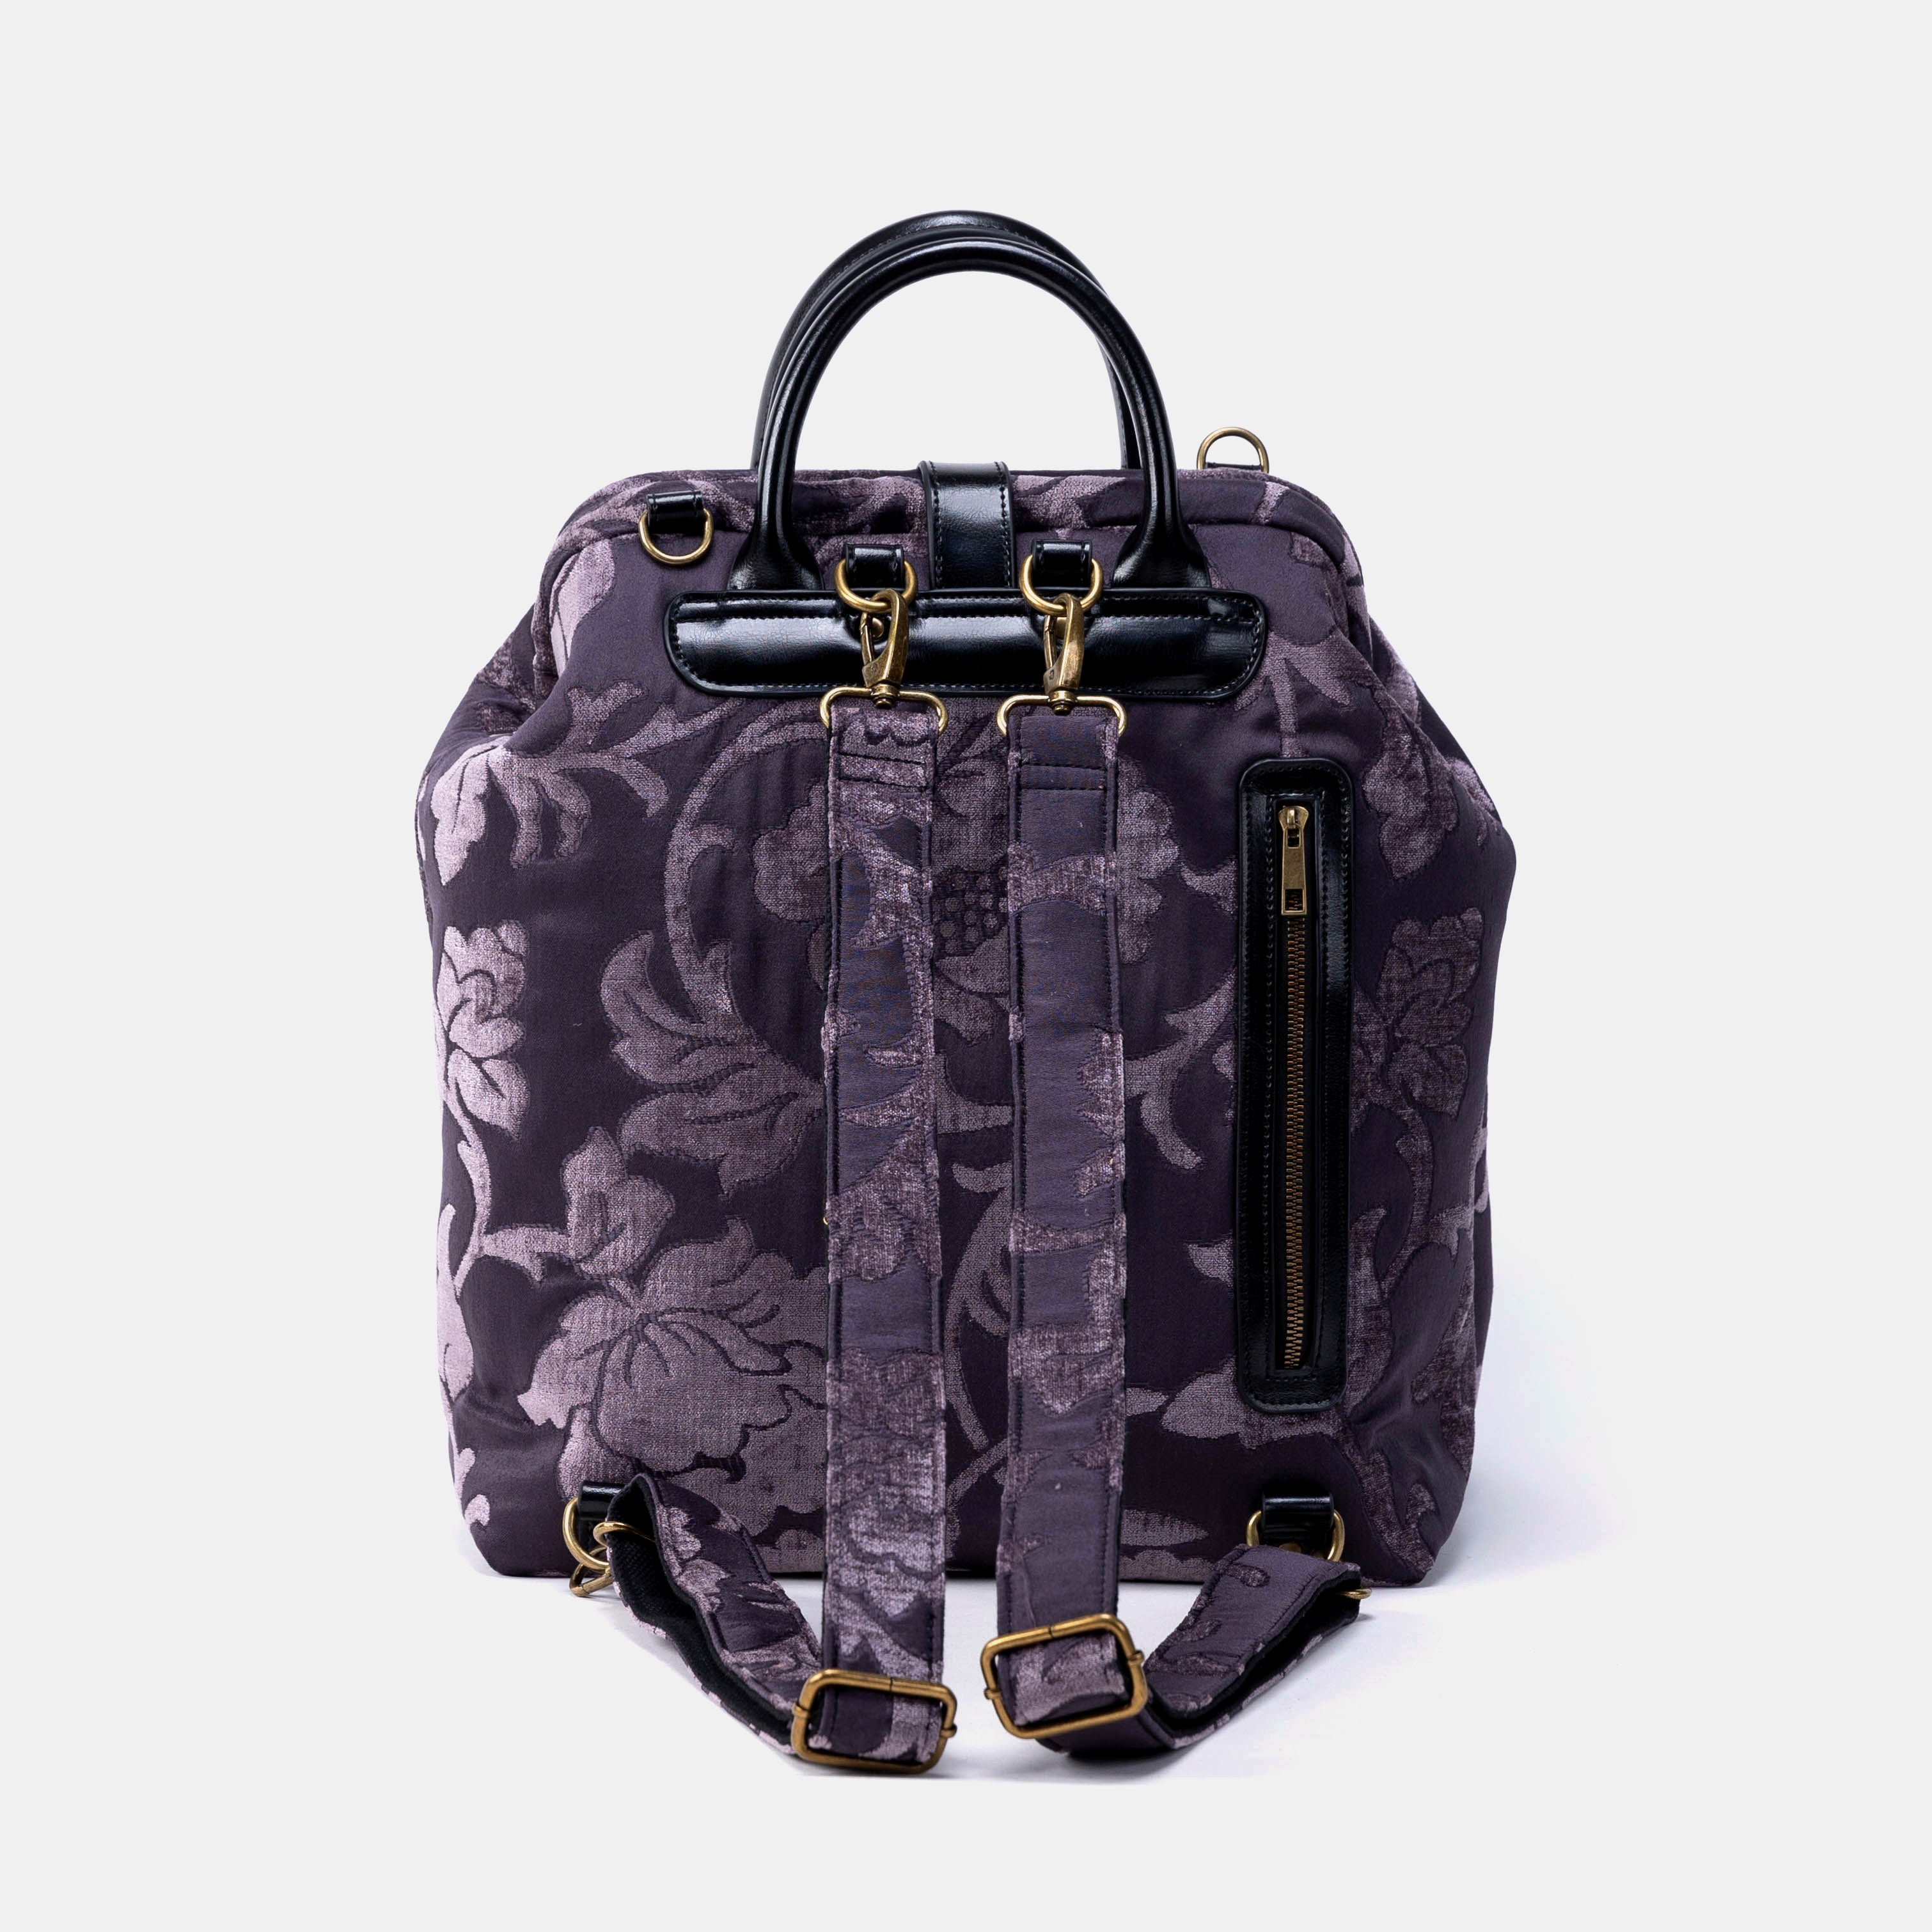 Floral Brocade Purple Carpet Laptop Backpack Back